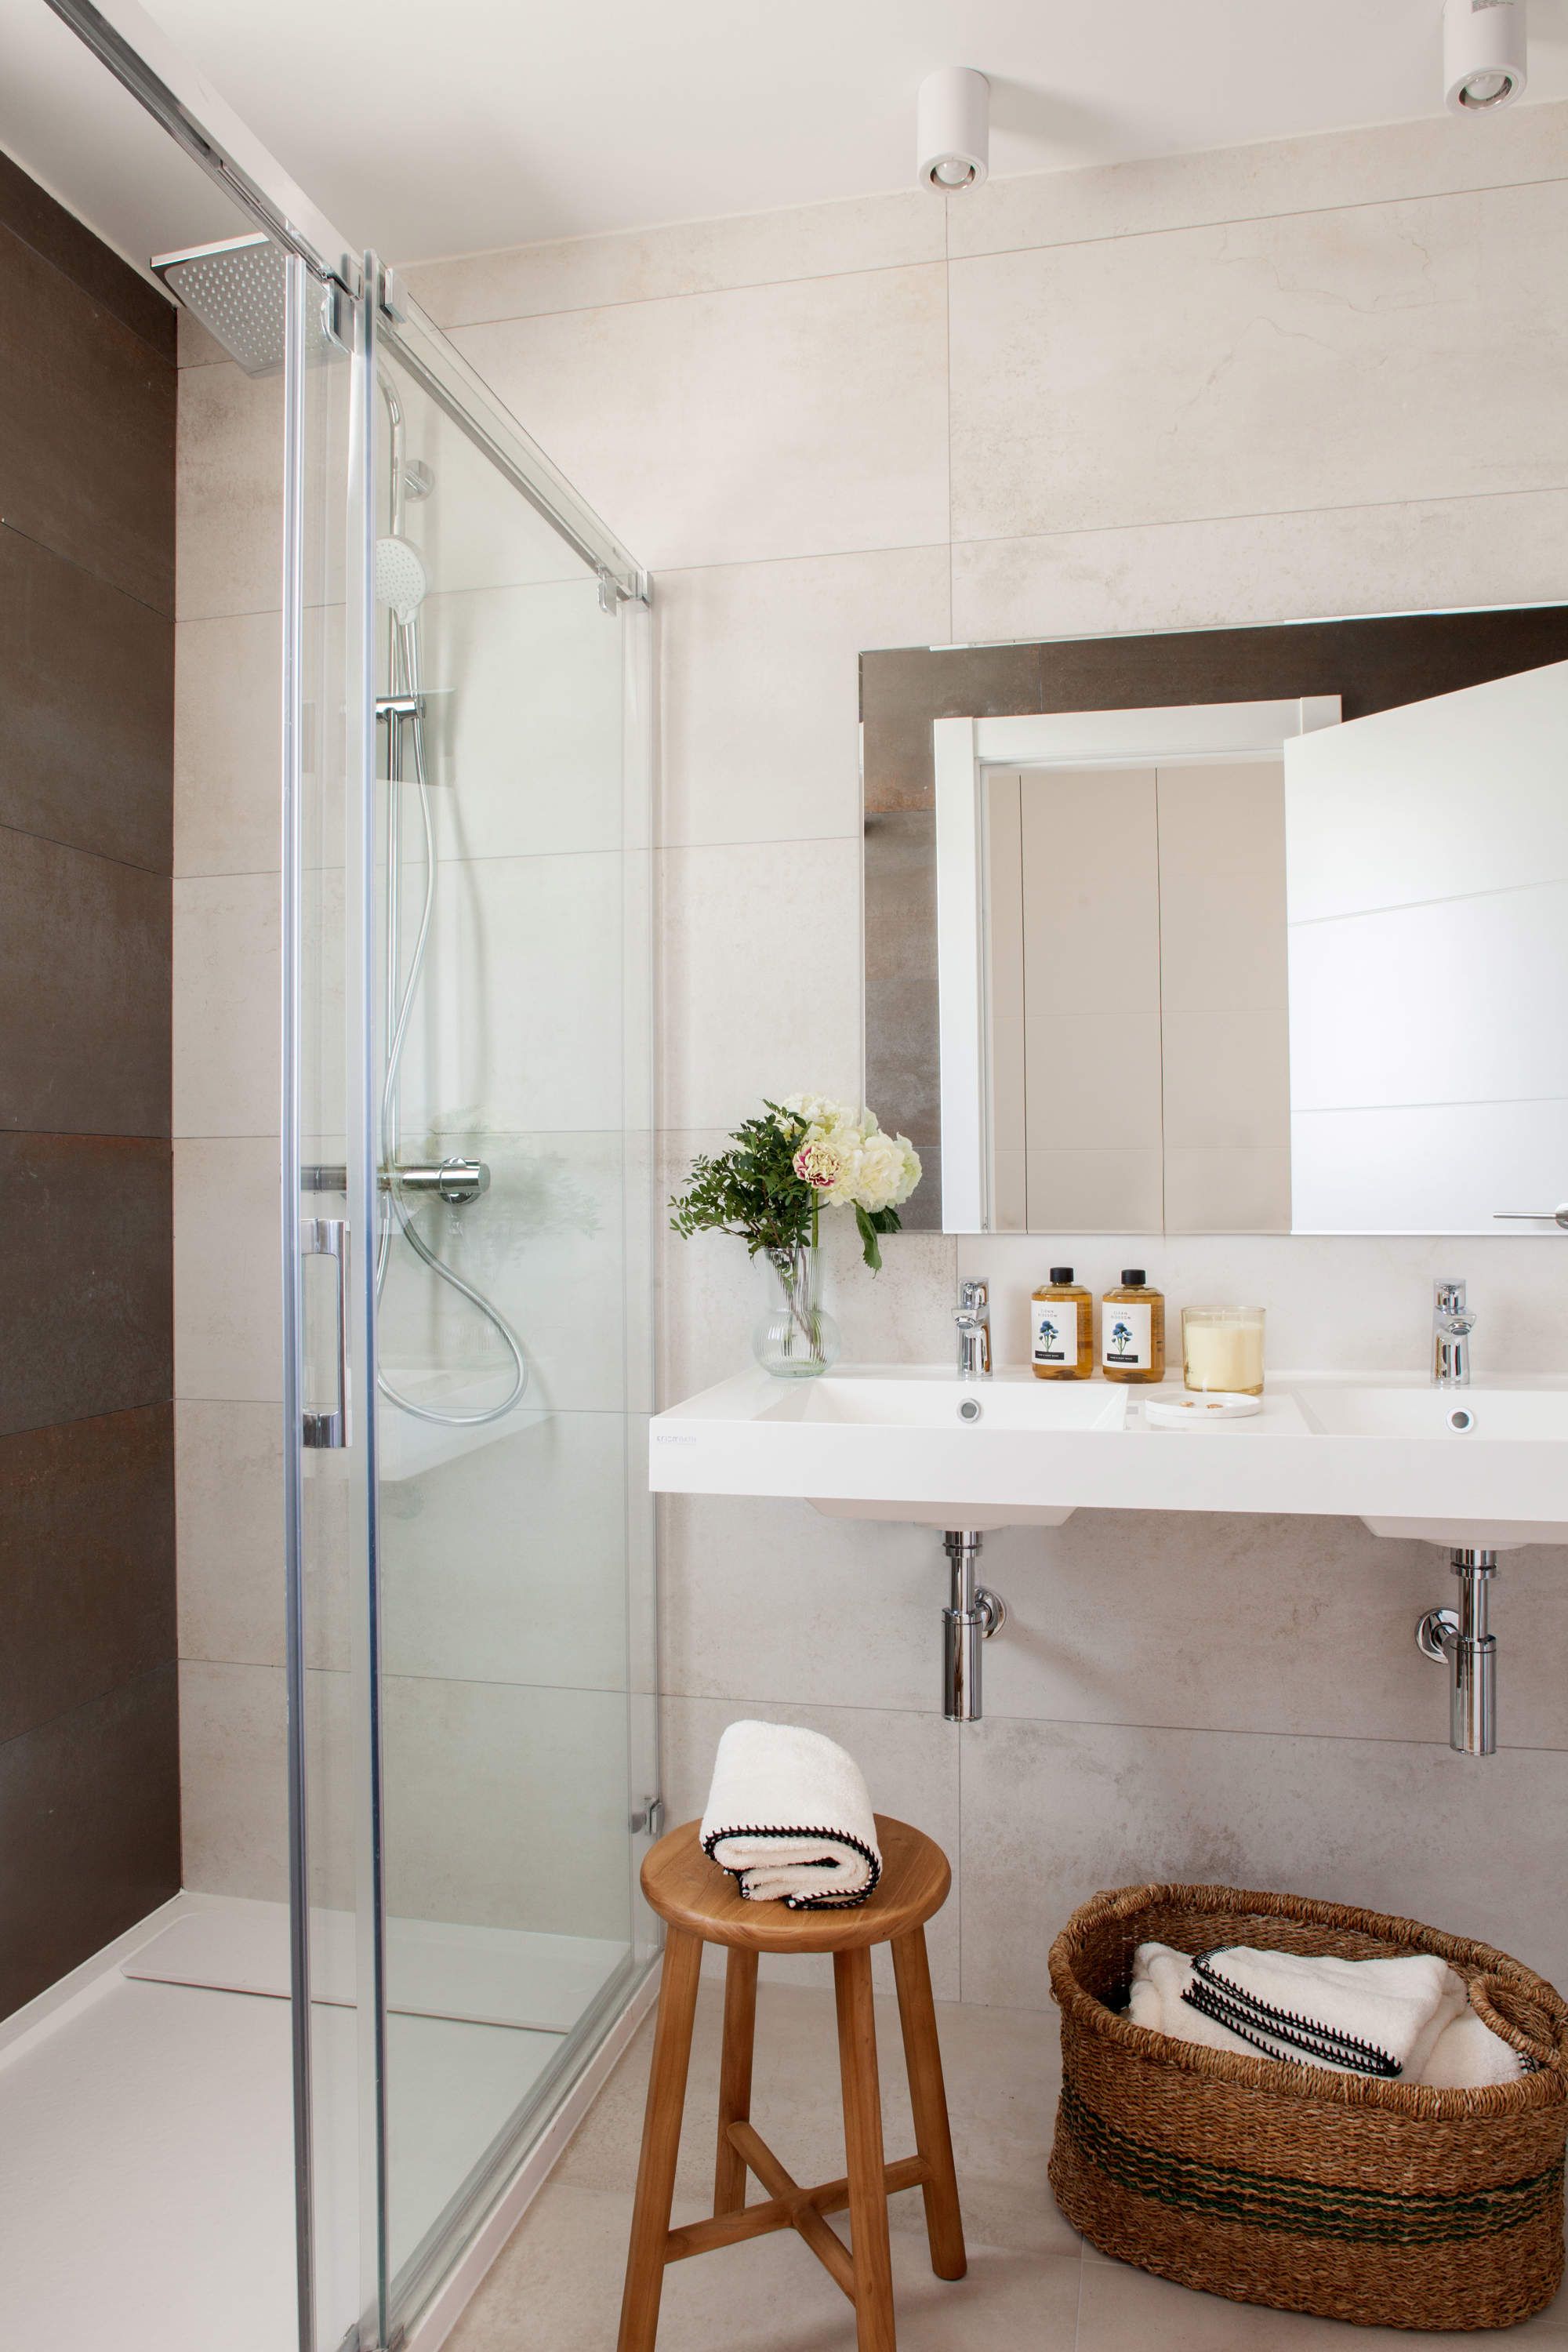 Baño del dormitorio en suite con ducha y mampara con azulejos de mármol.